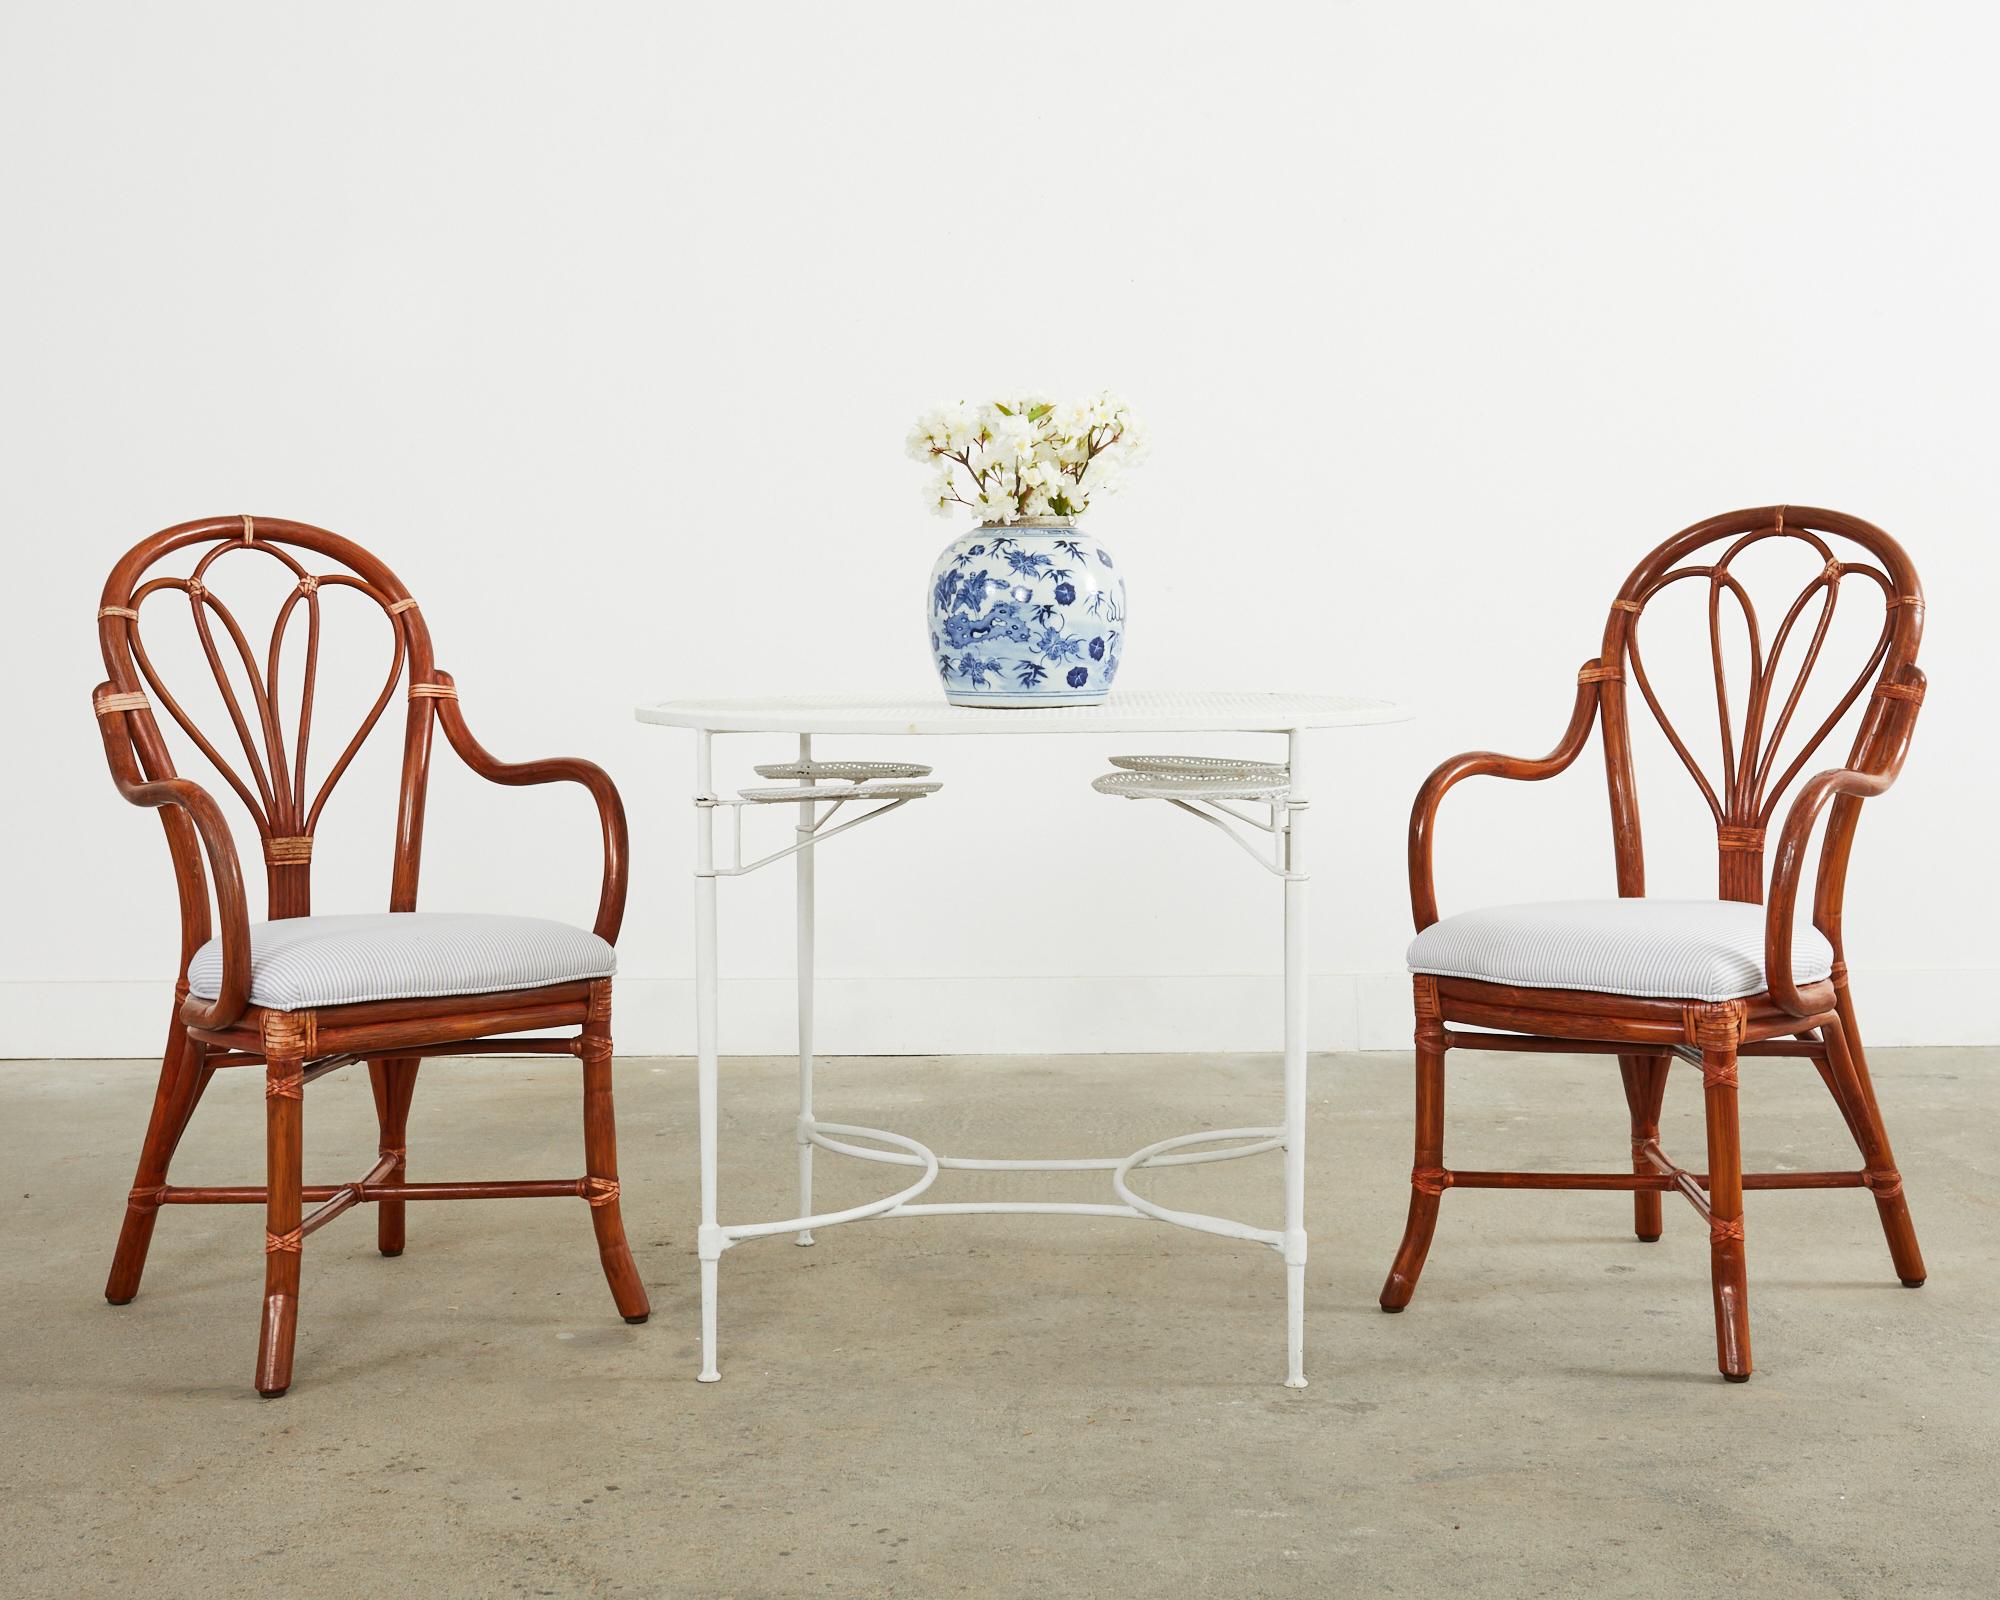 Exceptionnel ensemble de six fauteuils de salle à manger en rotin réalisés dans le style moderne organique côtier californien par McGuire. Les chaises présentent un cadre en rotin de bois courbé avec des accoudoirs gracieusement courbés, joints à un